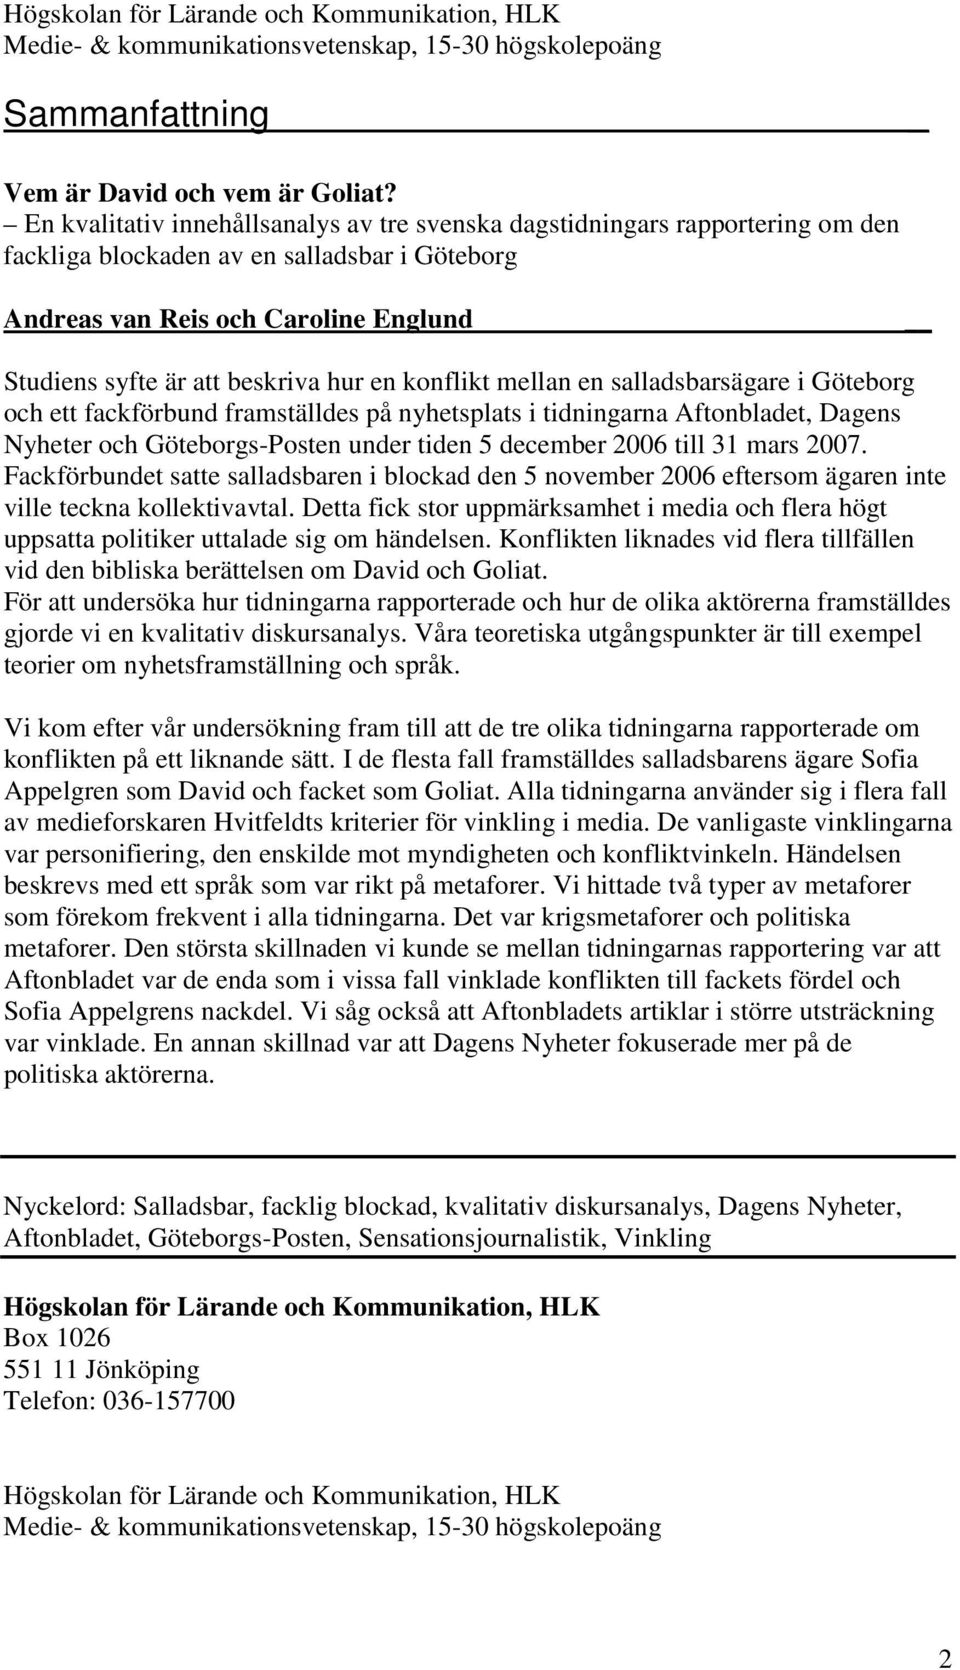 en konflikt mellan en salladsbarsägare i Göteborg och ett fackförbund framställdes på nyhetsplats i tidningarna Aftonbladet, Dagens Nyheter och Göteborgs-Posten under tiden 5 december 2006 till 31